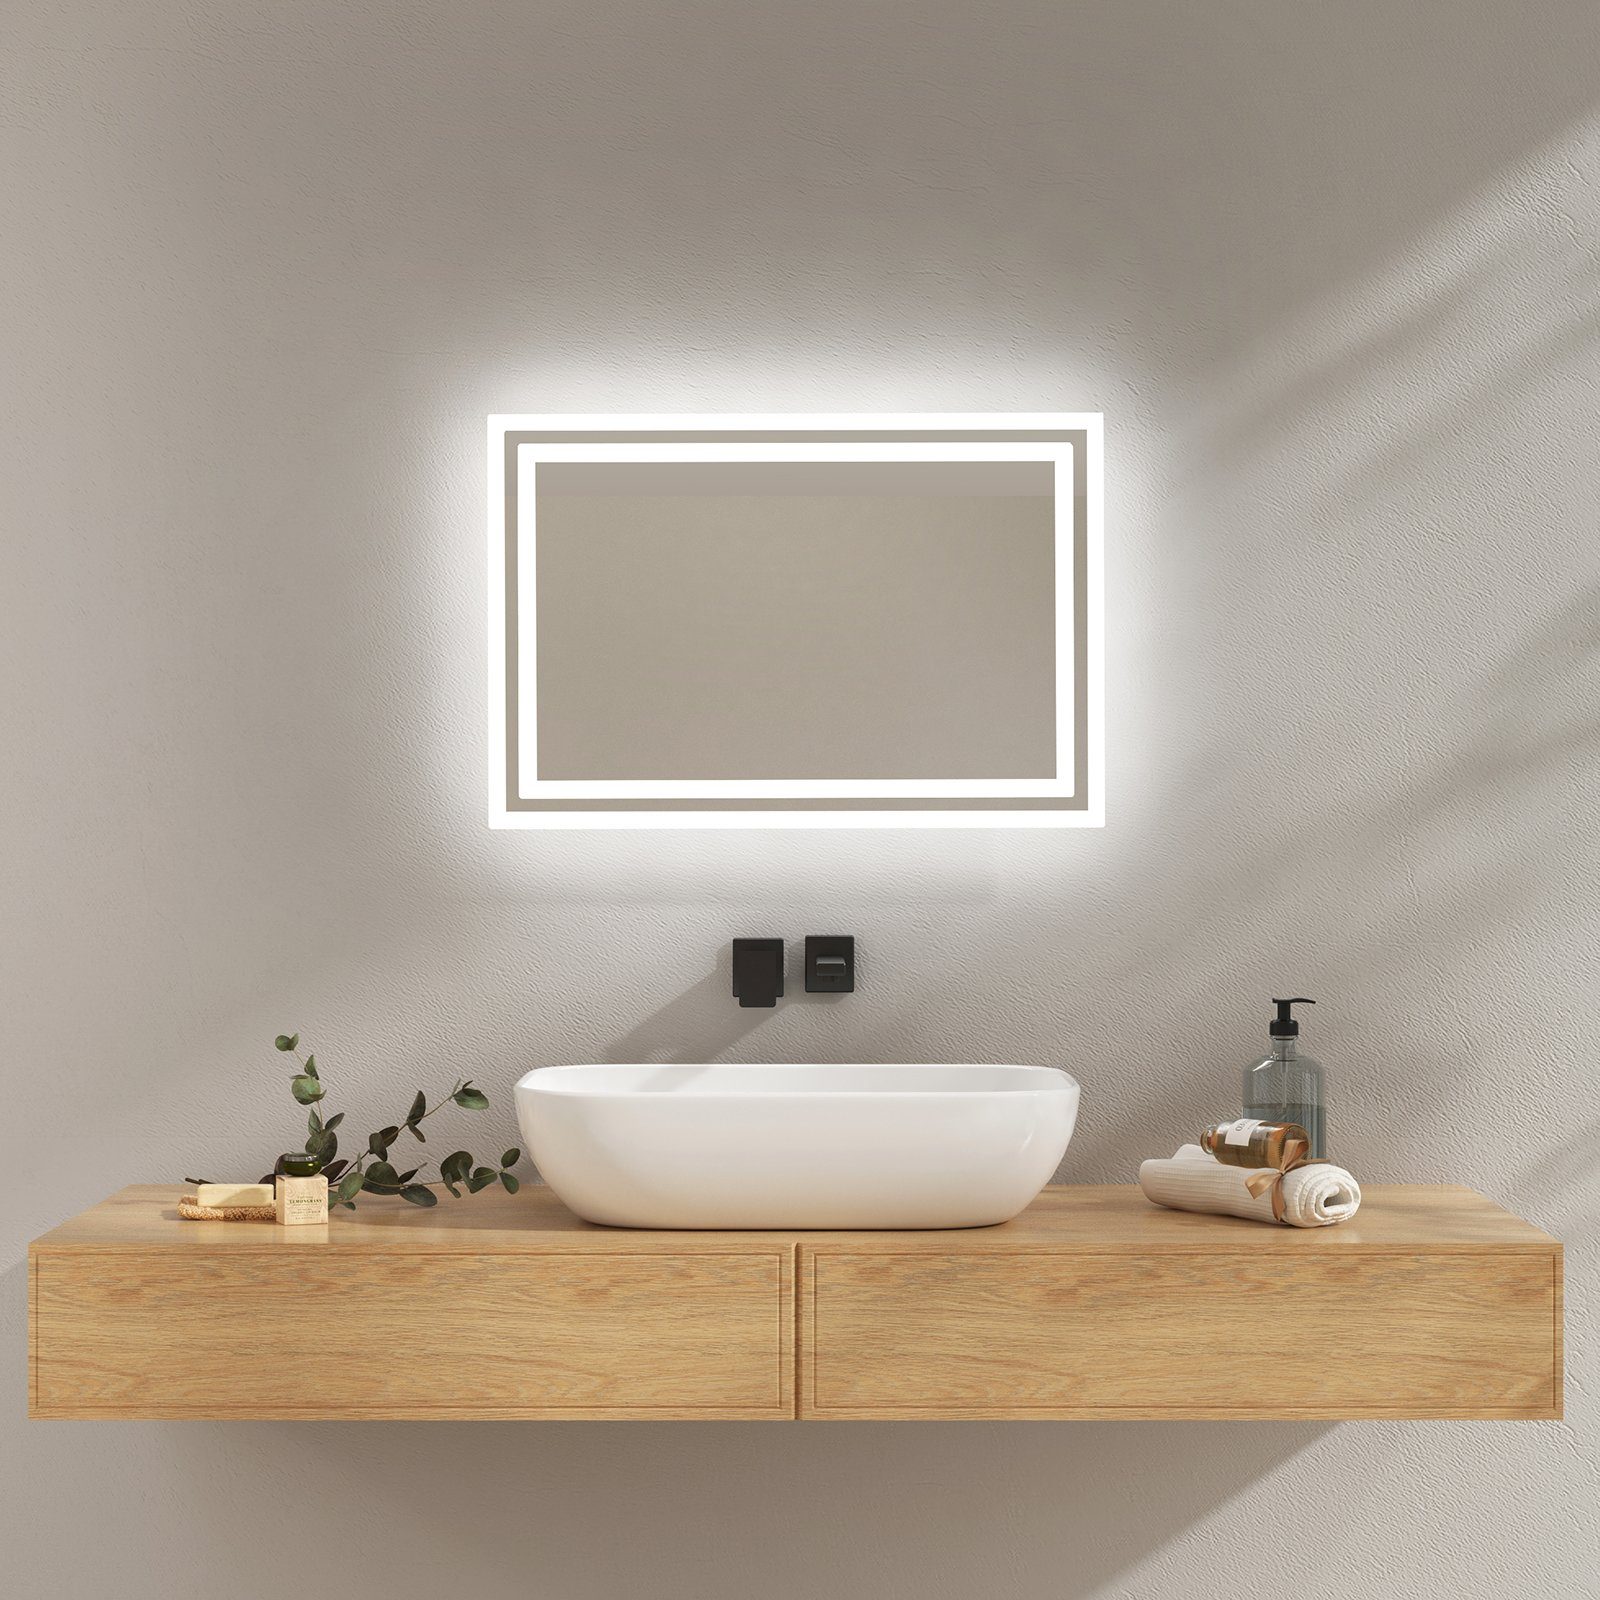 EMKE Зеркало для ванной комнаты Зеркало для ванной комнаты mit Beleuchtung LED Badezimmerspiegel Настенное зеркало, Beschlagfrei, 2 Farben des Lichts, Druckknopfschalter